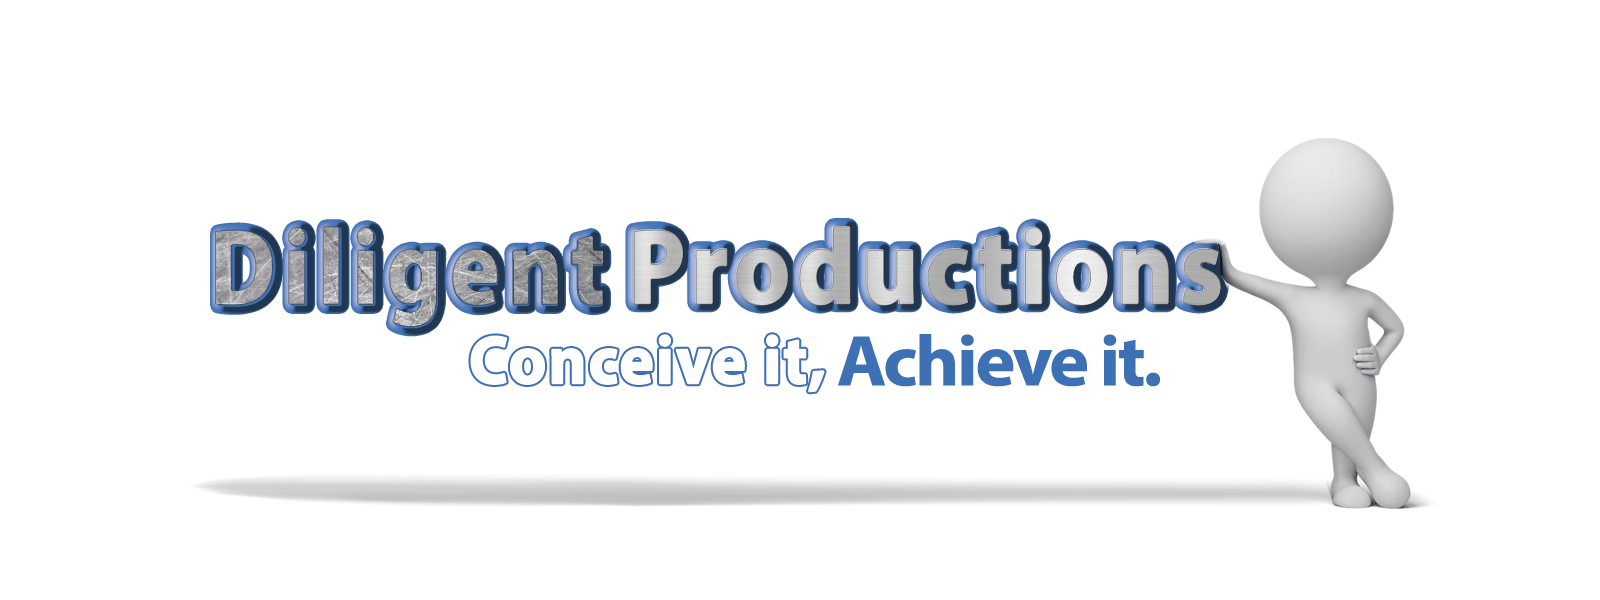 Diligent Productions (Copy)